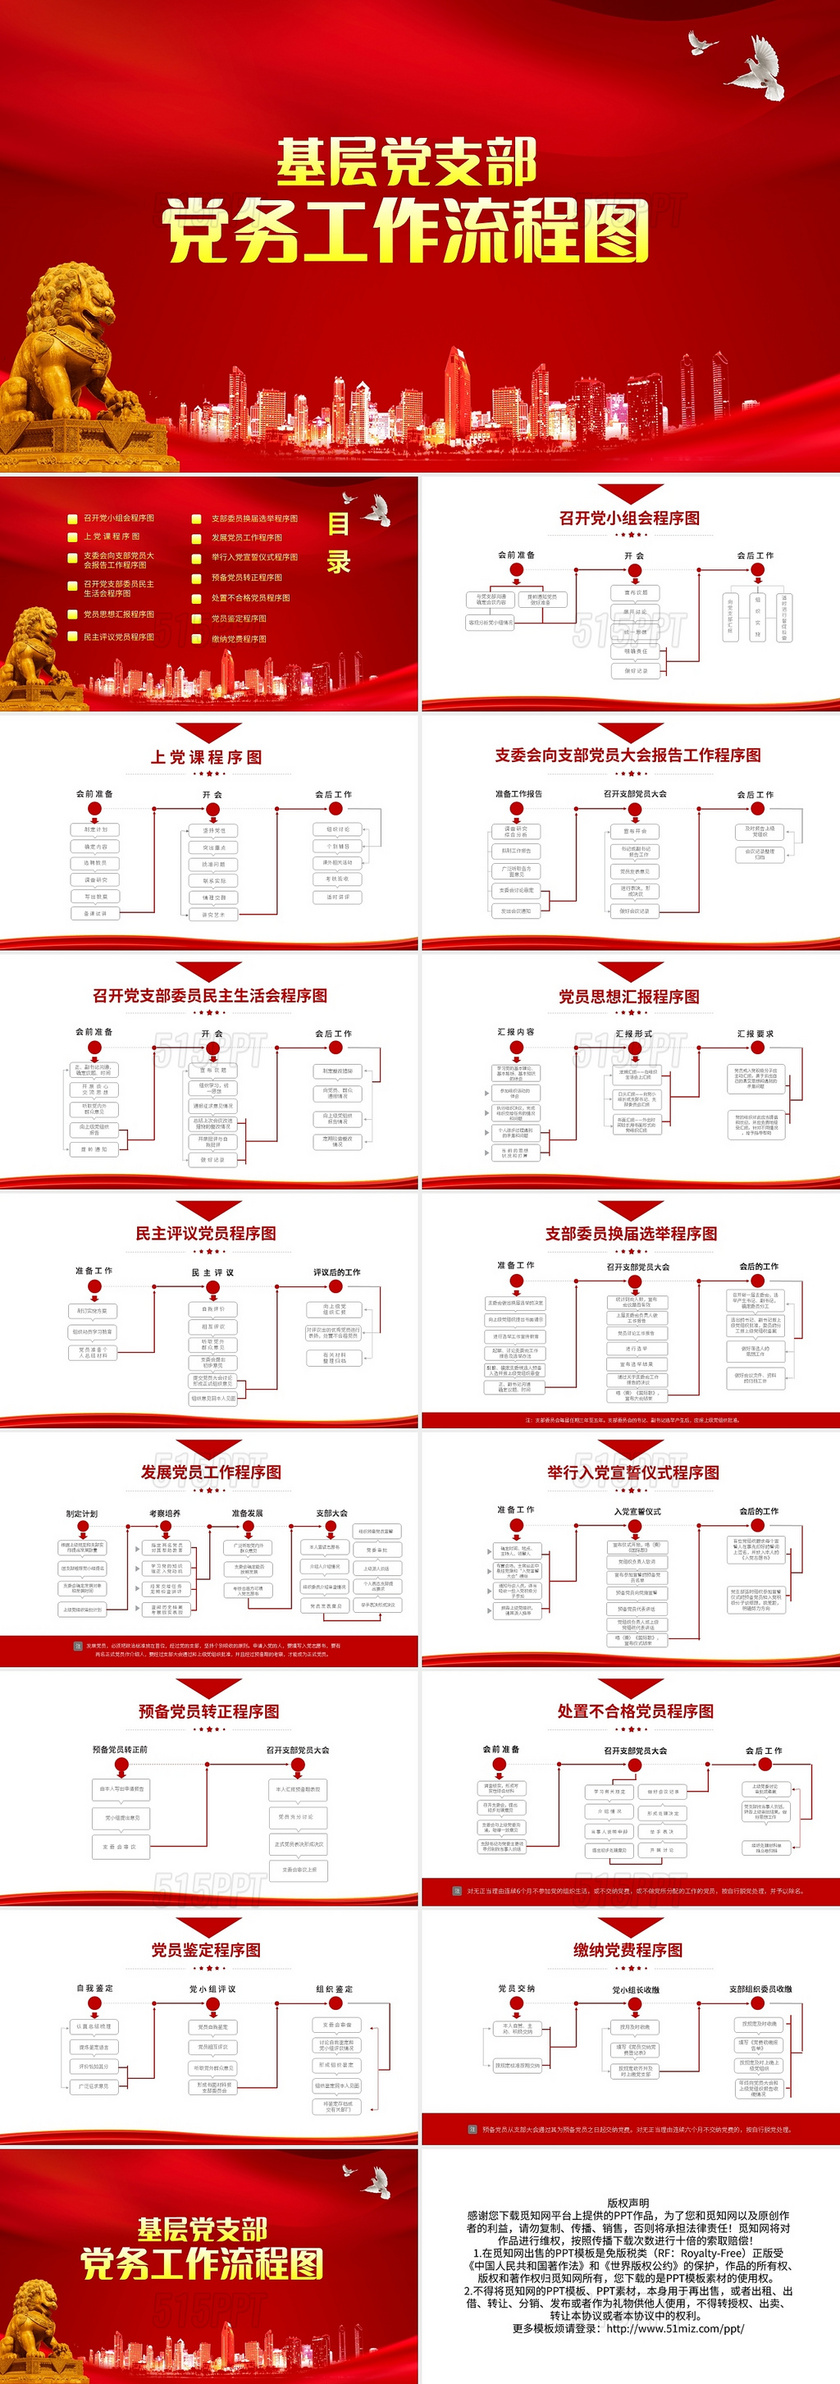 红色简约基层党支部党务工作流程图PPT模板宣传PPT动态PP